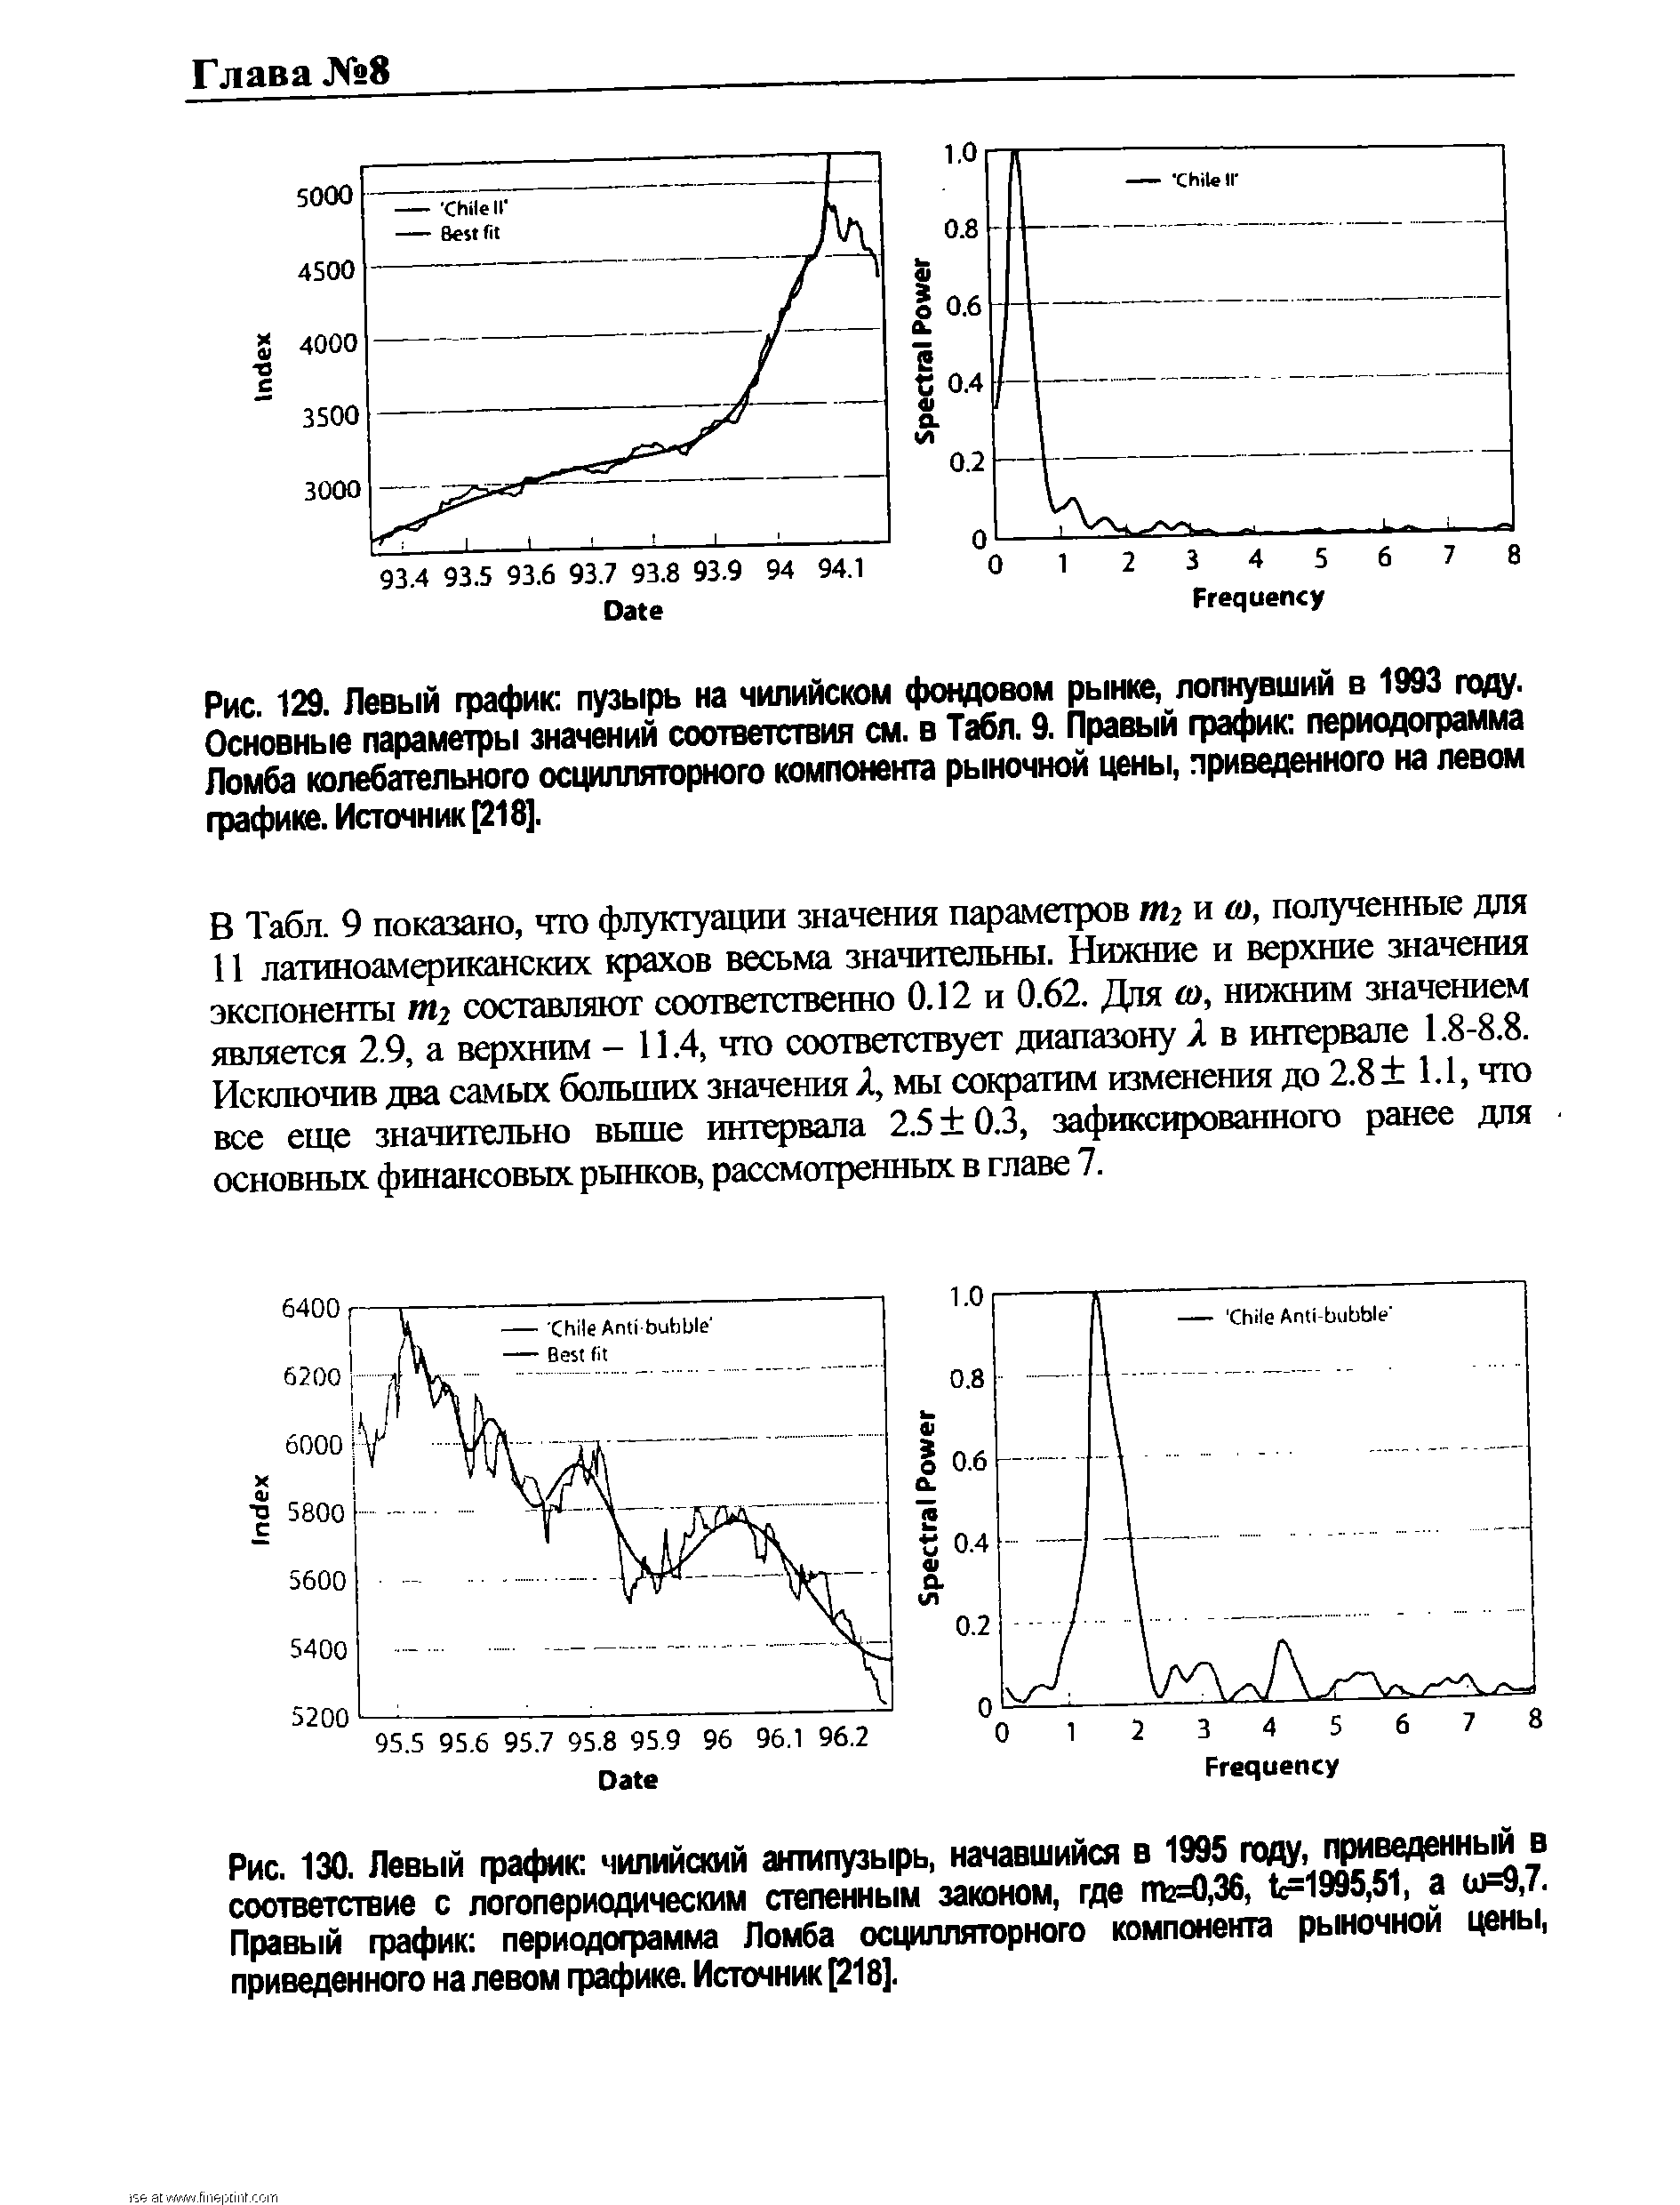 Рис. 129. Левый график пузырь на чилийском <a href="/info/6206">фондовом рынке</a>, лопнувший в 1993 году. Основные параметры значений соответствия см. в Табл. 9. Правый график периодограмма Ломба колебательного осцилляторного компонента <a href="/info/5890">рыночной цены</a>, приведенного на левом графике. Источник [218].
